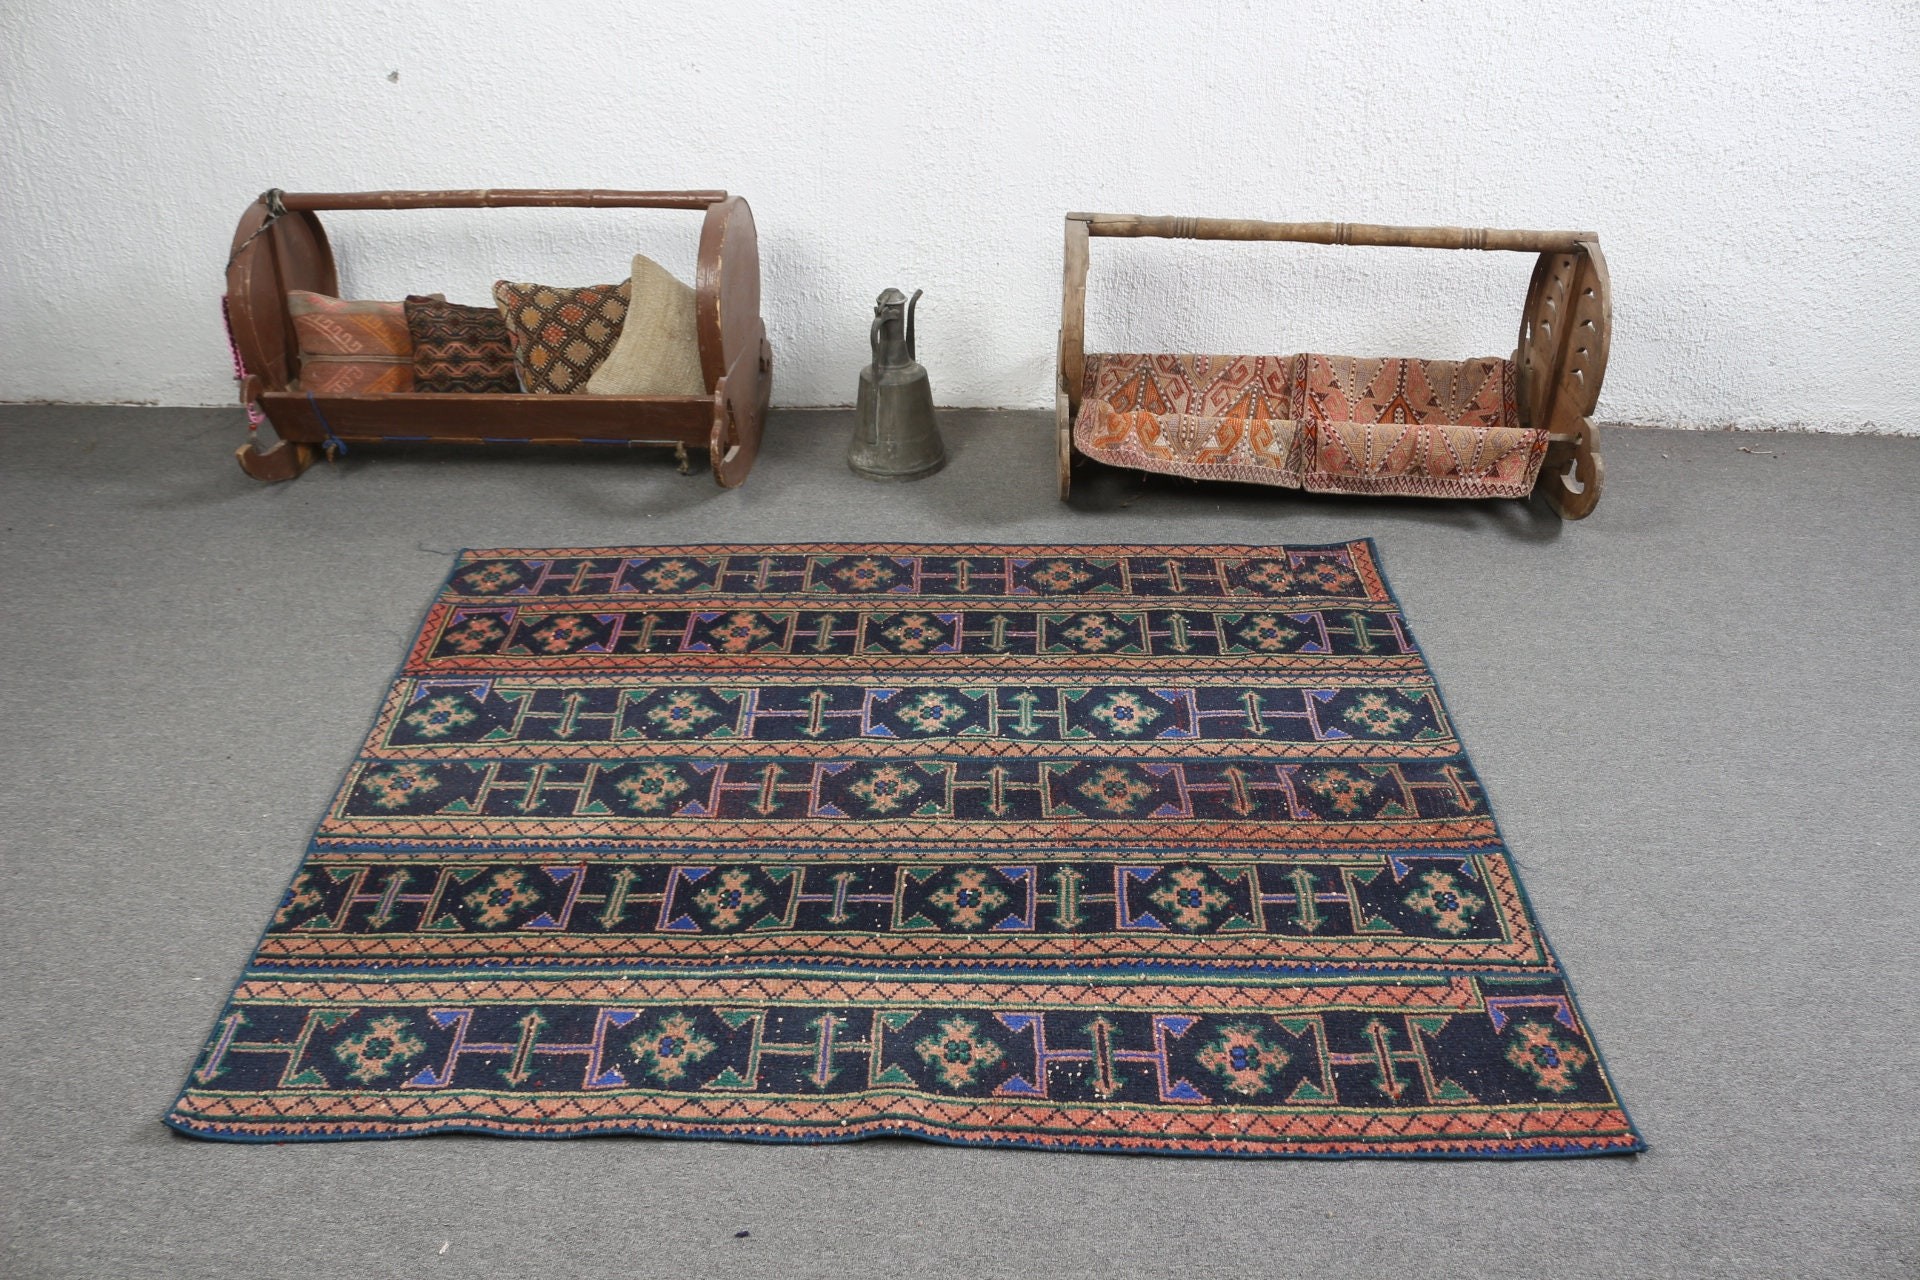 Indoor Rugs, Turkish Rugs, Antique Rug, Oriental Rugs, Dining Room Rug, Rugs for Floor, 4.6x5.4 ft Area Rug, Blue Cool Rugs, Vintage Rug